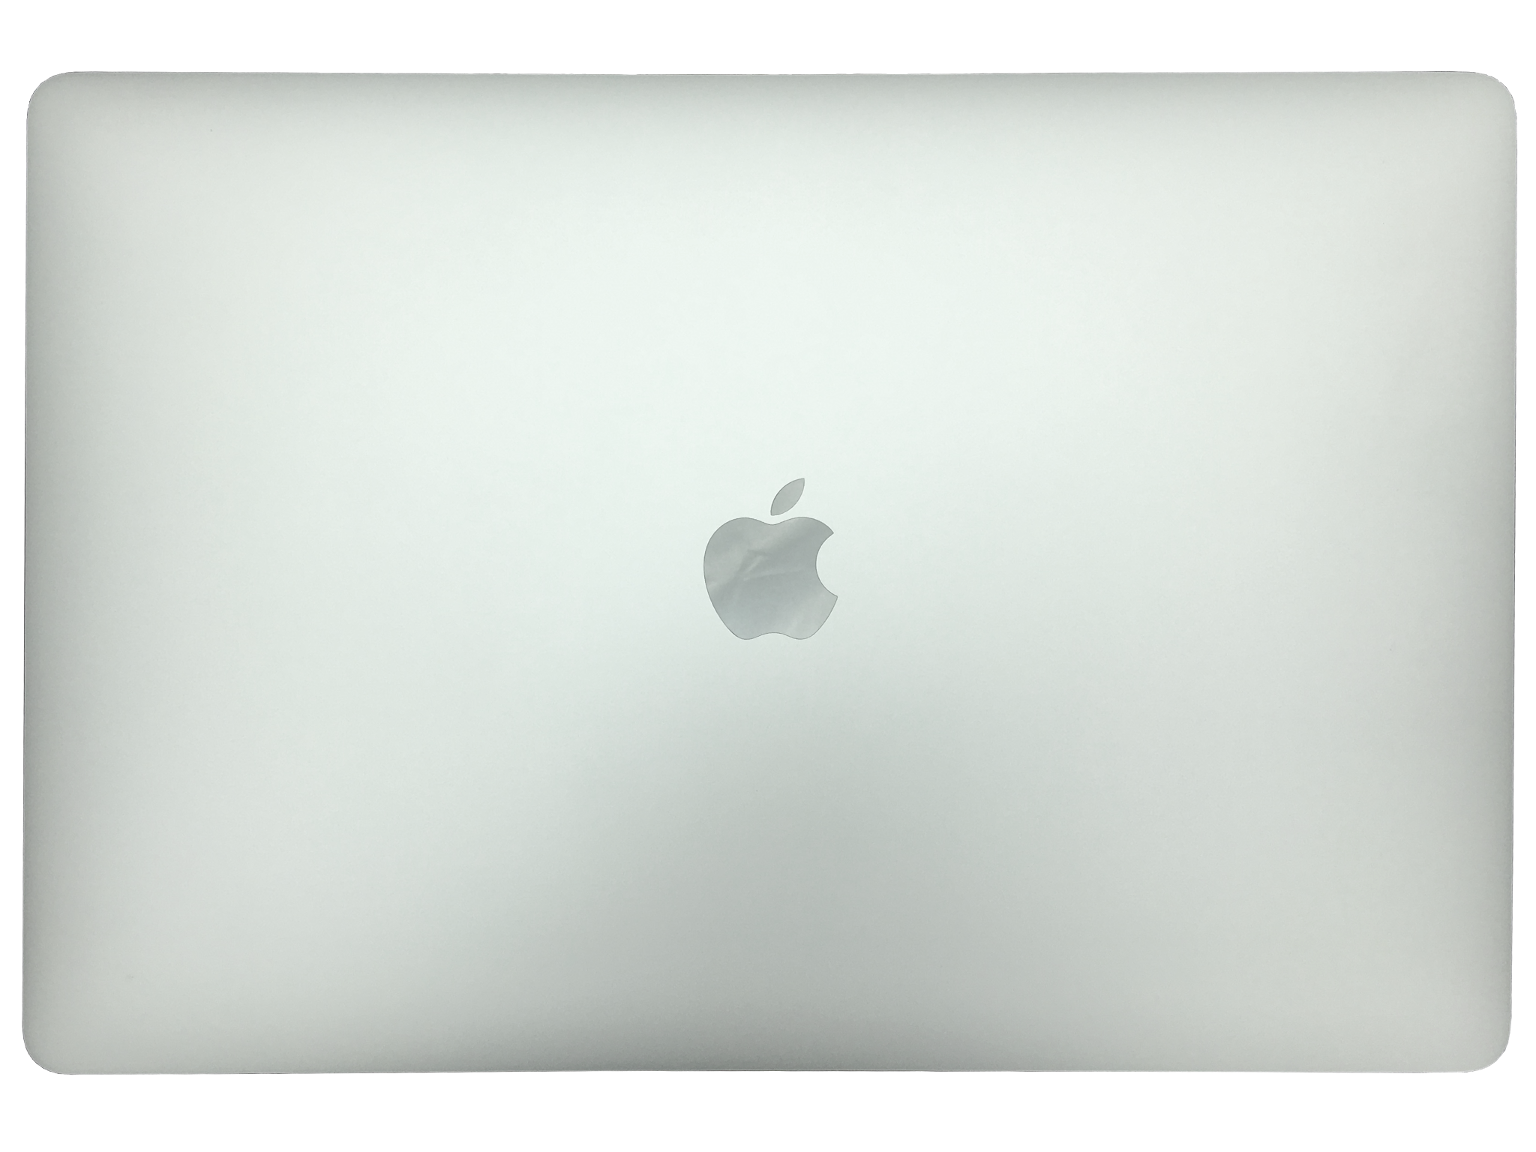 MacBook Pro mit Touchbar 39,1 cm 16 Zoll Retina Display Intel Core i7-9750H, 16GB RAM, 512GB SSD, Sp